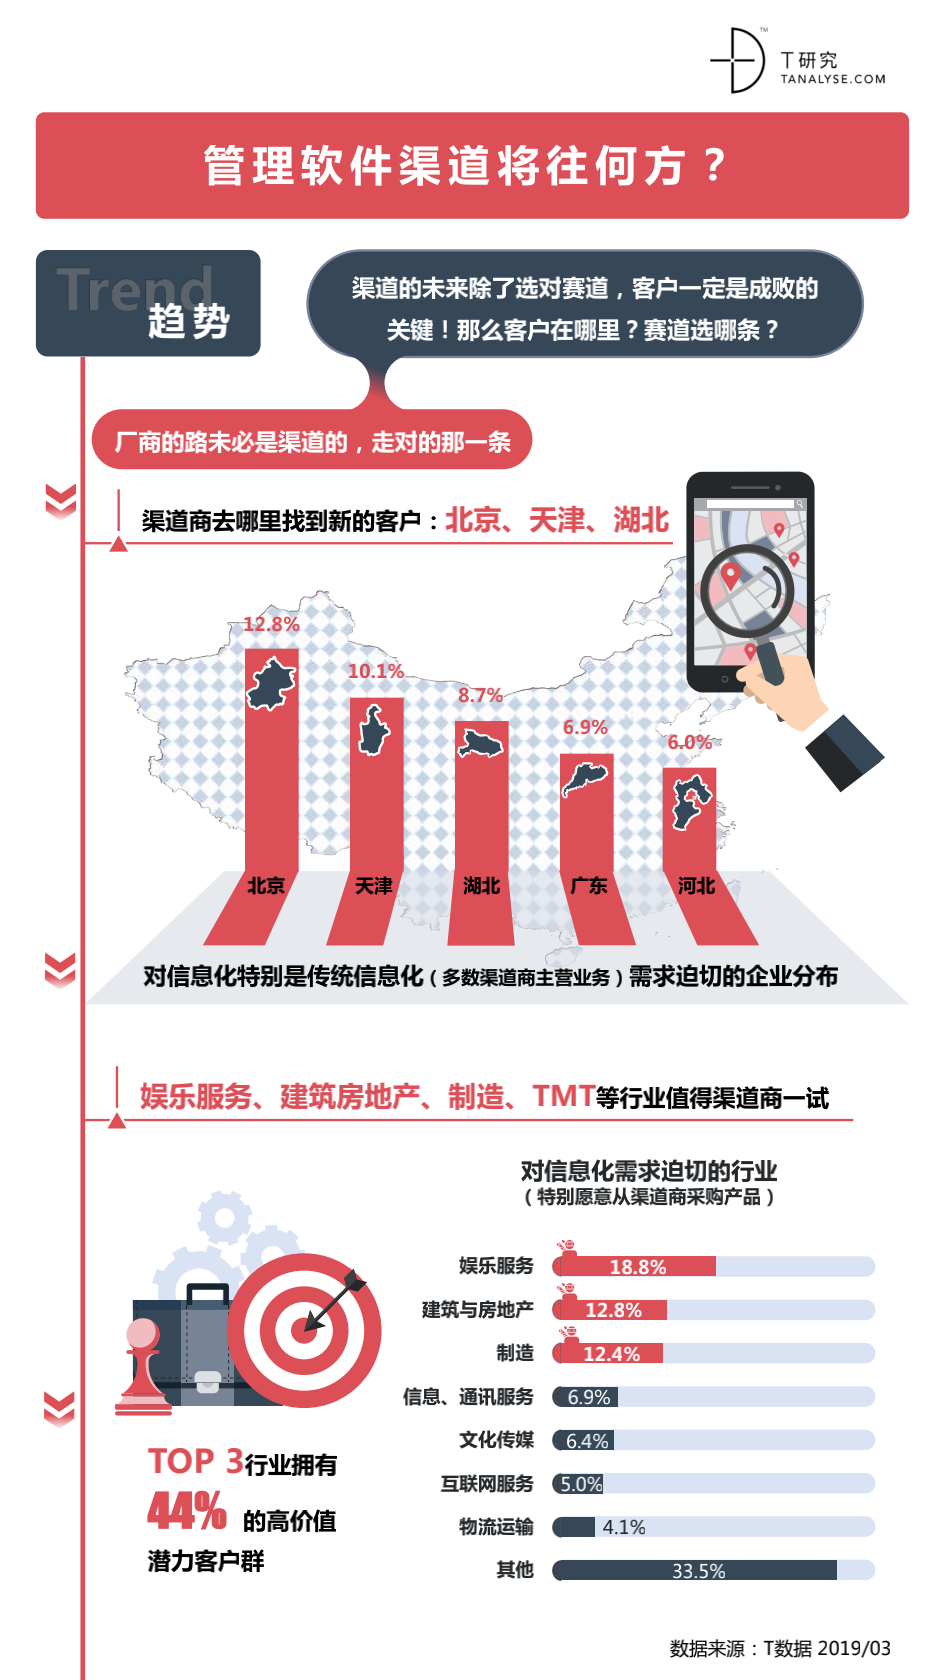 2019中国管理软件渠道生态报告暨渠道评估手册